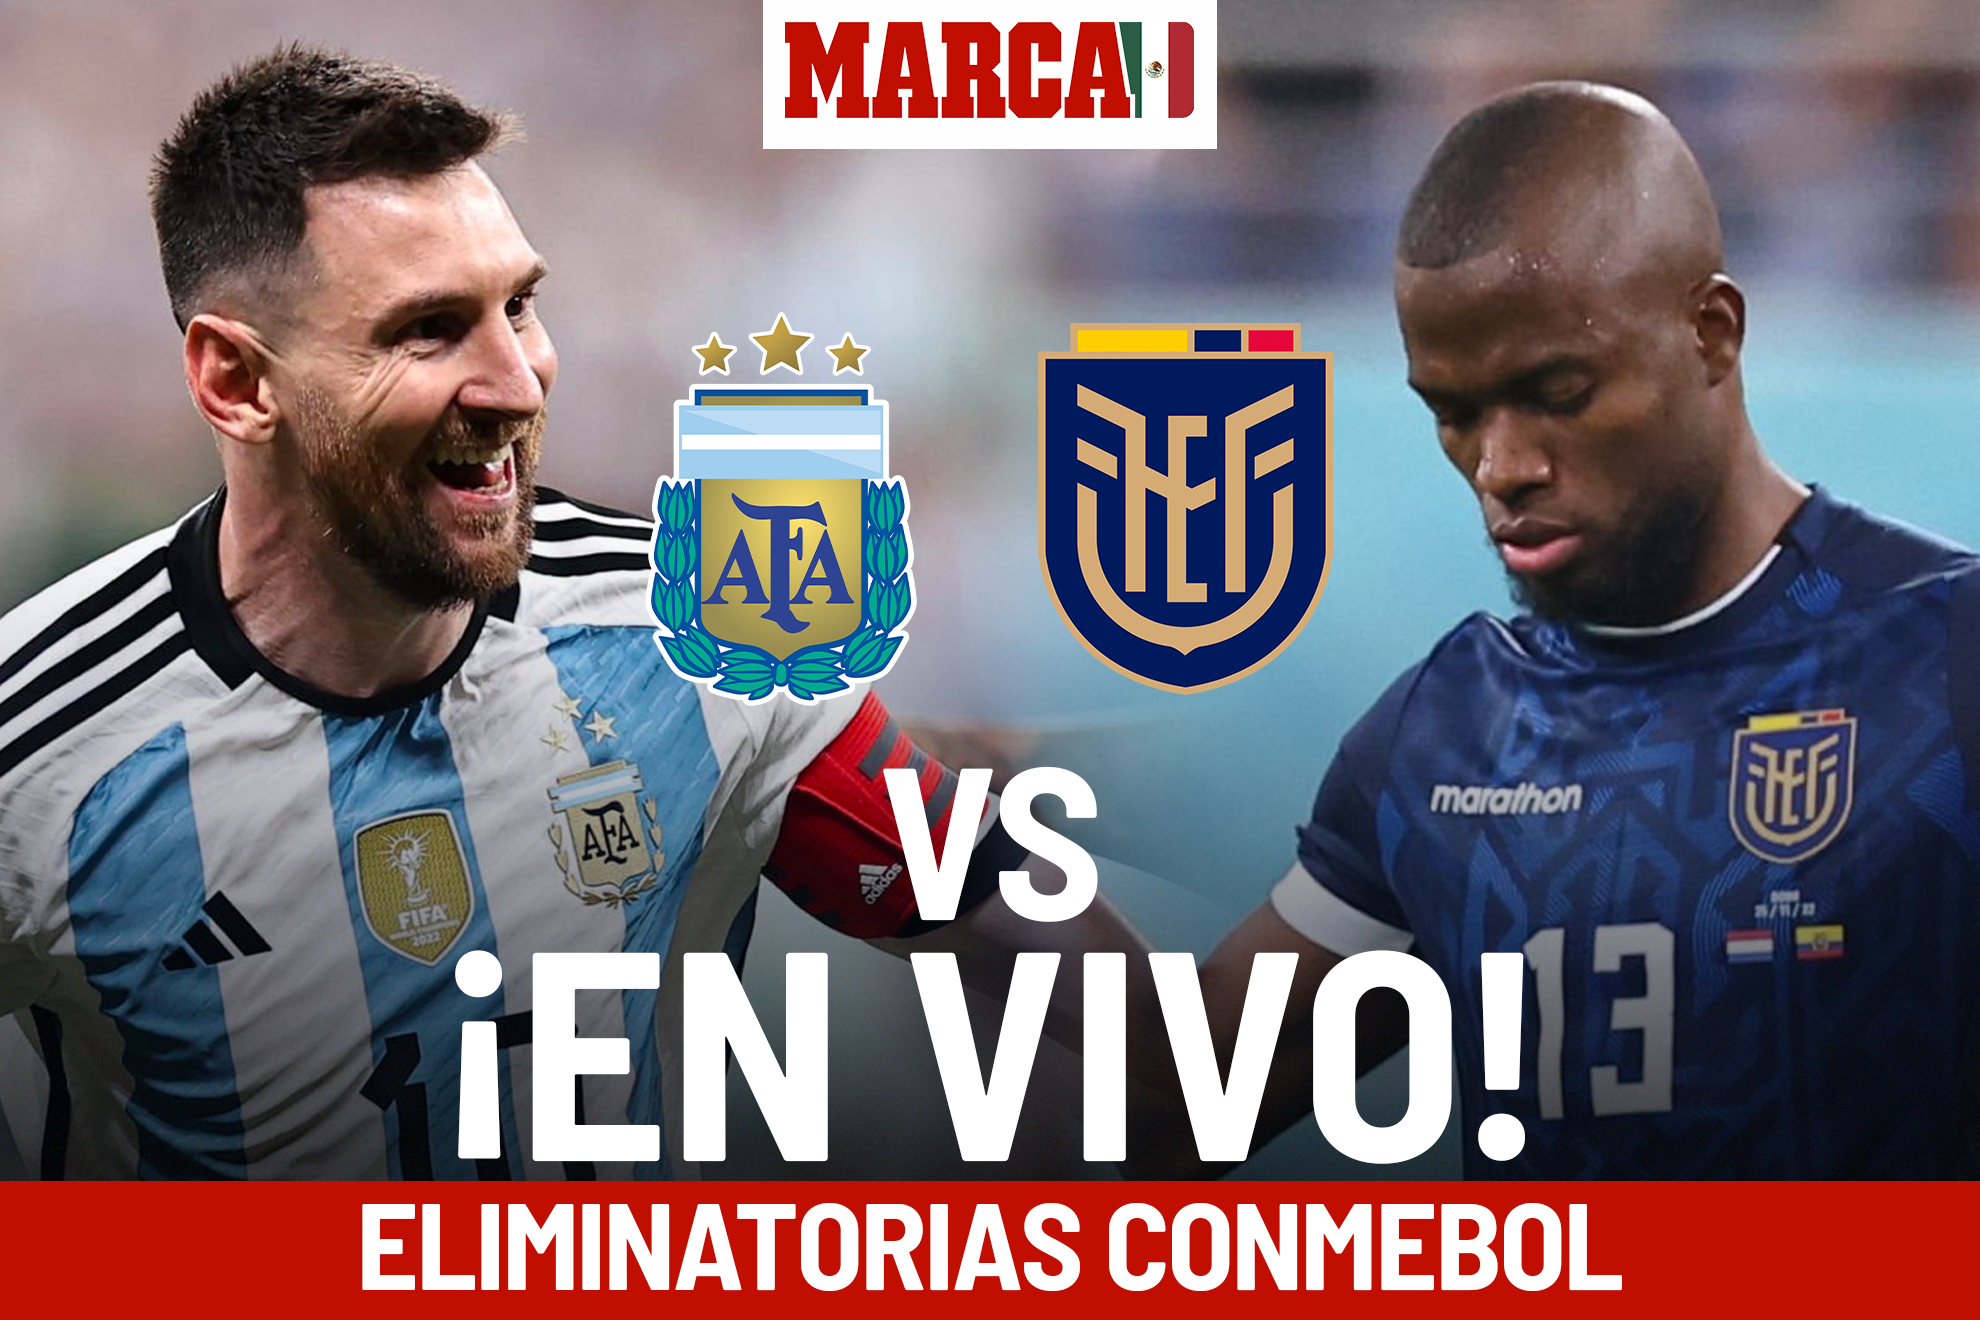 Qué partidos de fútbol se pueden ver hoy sábado por televisión en Uruguay?